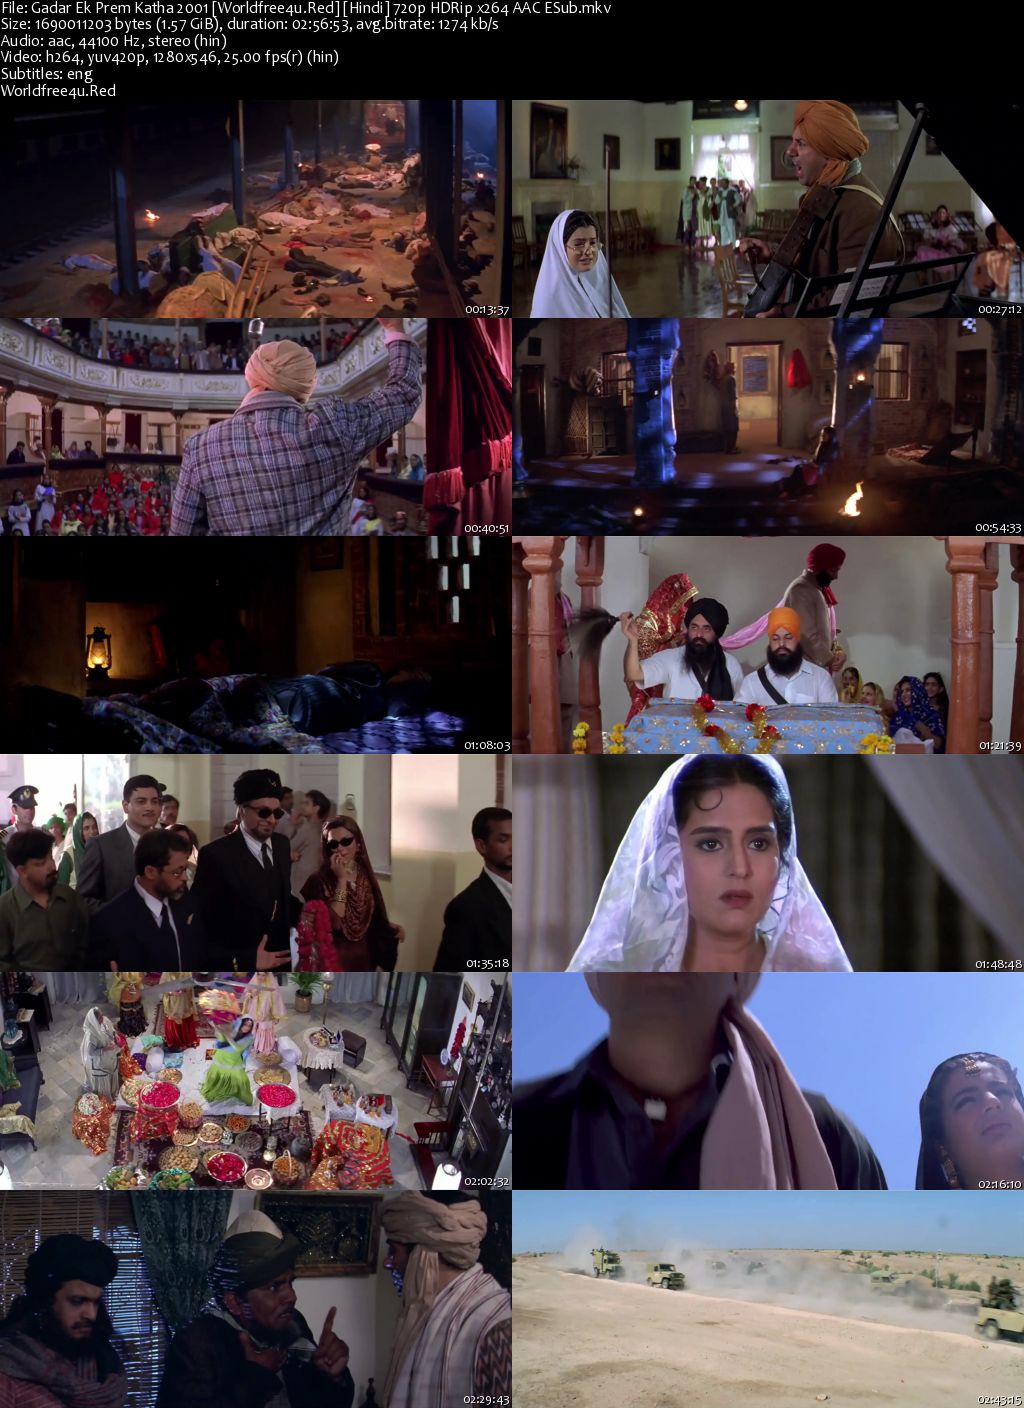 Gadar: Ek Prem Katha 2001 Hindi Movie Download || HDRip 720p